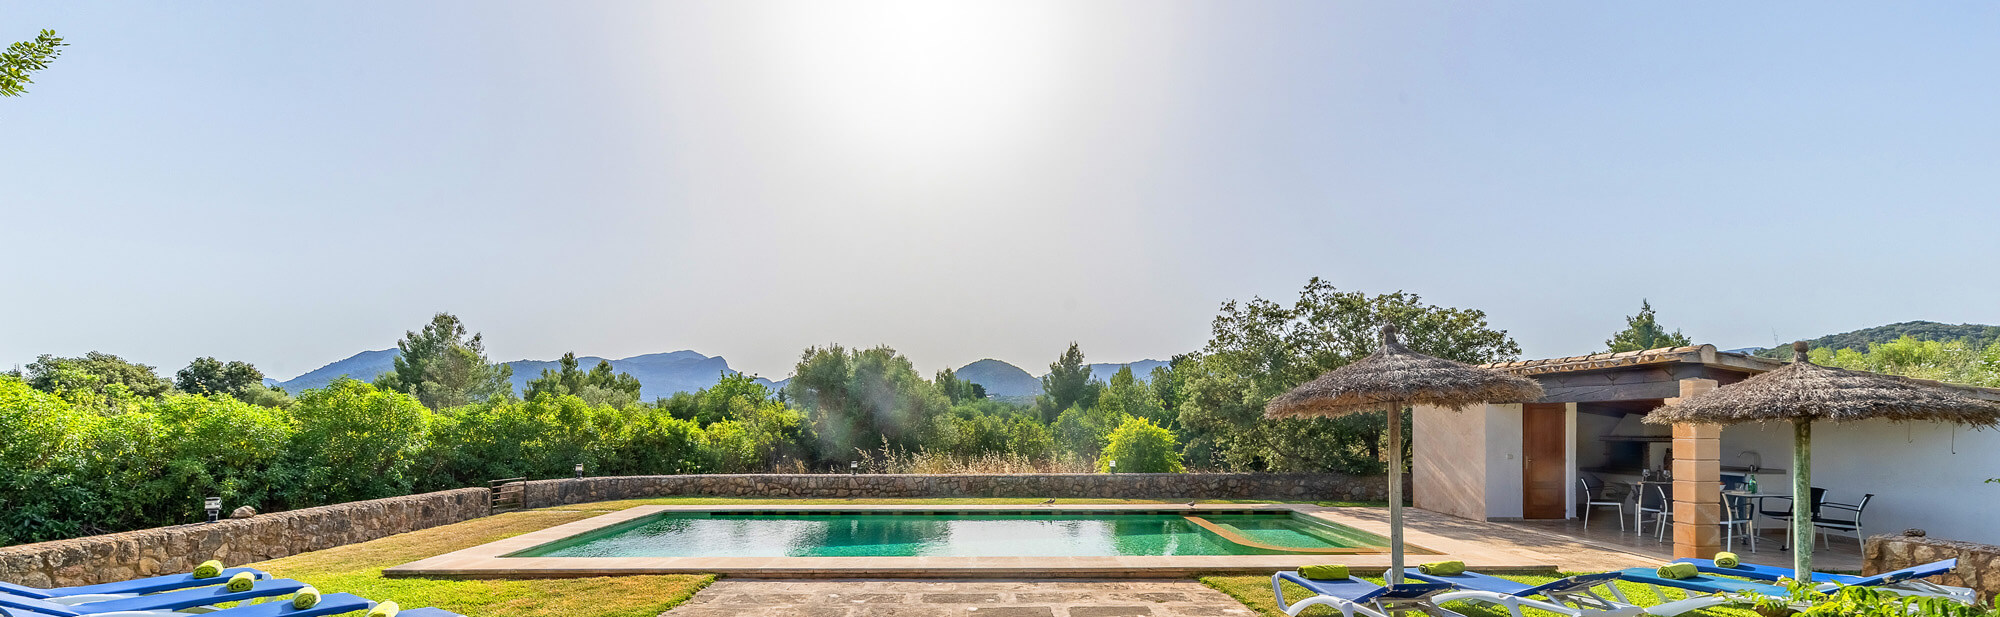 Ferienhaus Mallorca mit Pool und schönem Ausblick mieten.